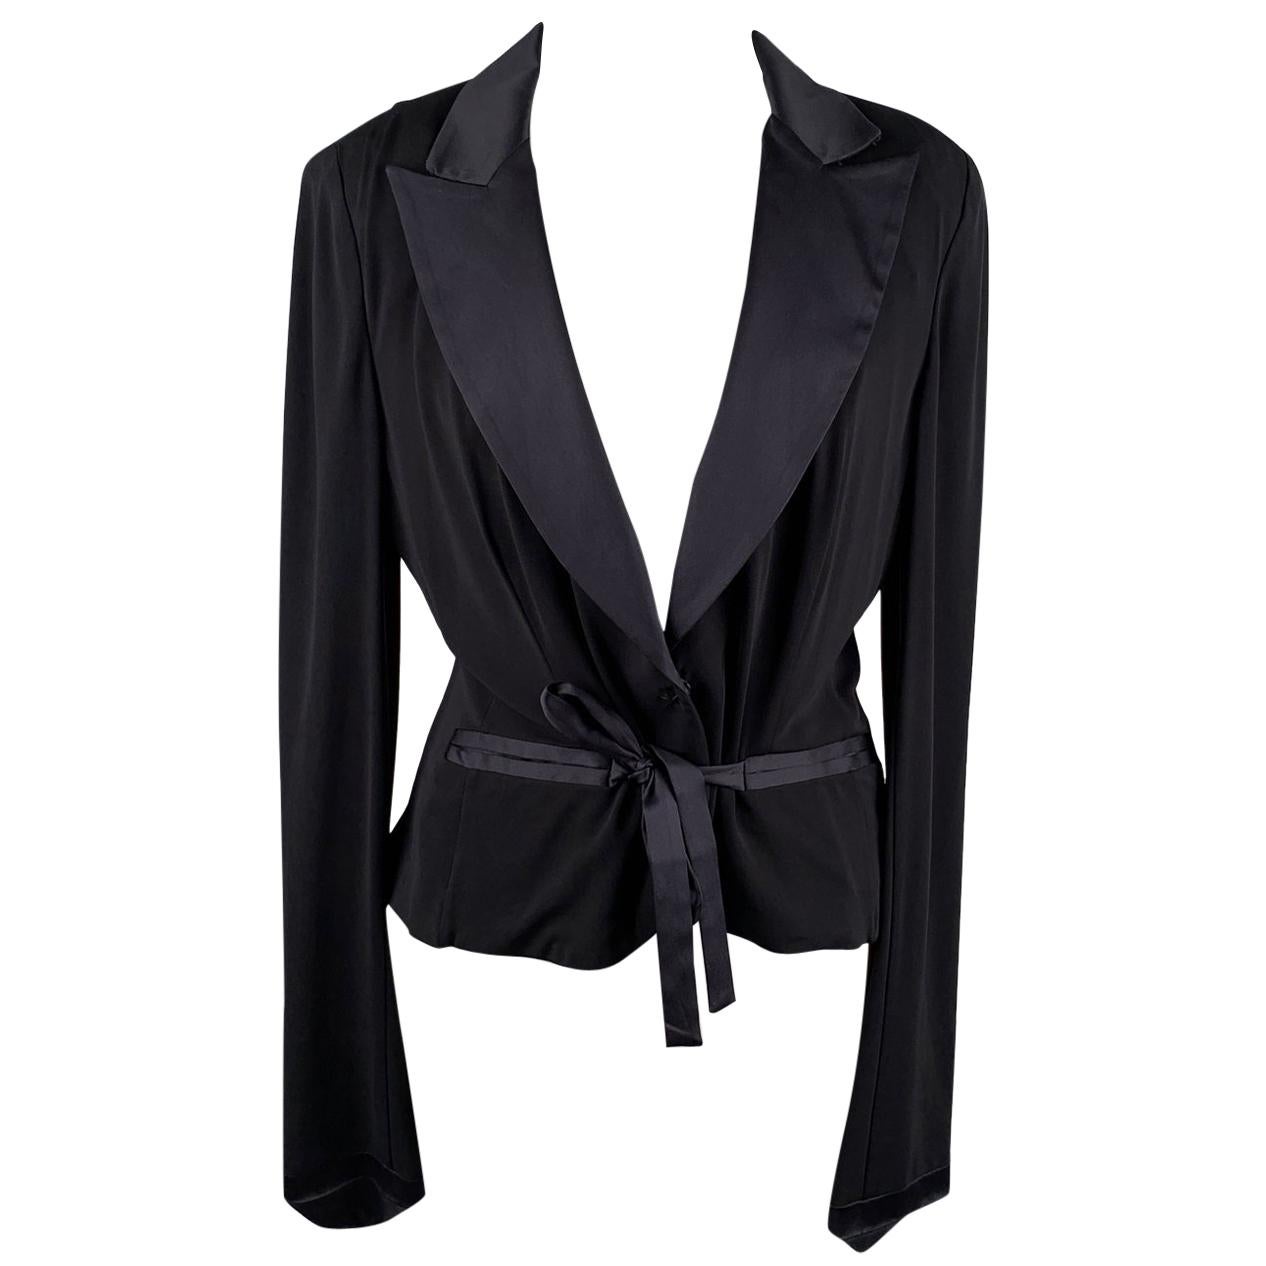 Gianfranco Ferré Black Blazer Jacket with Silk Trim Size 44